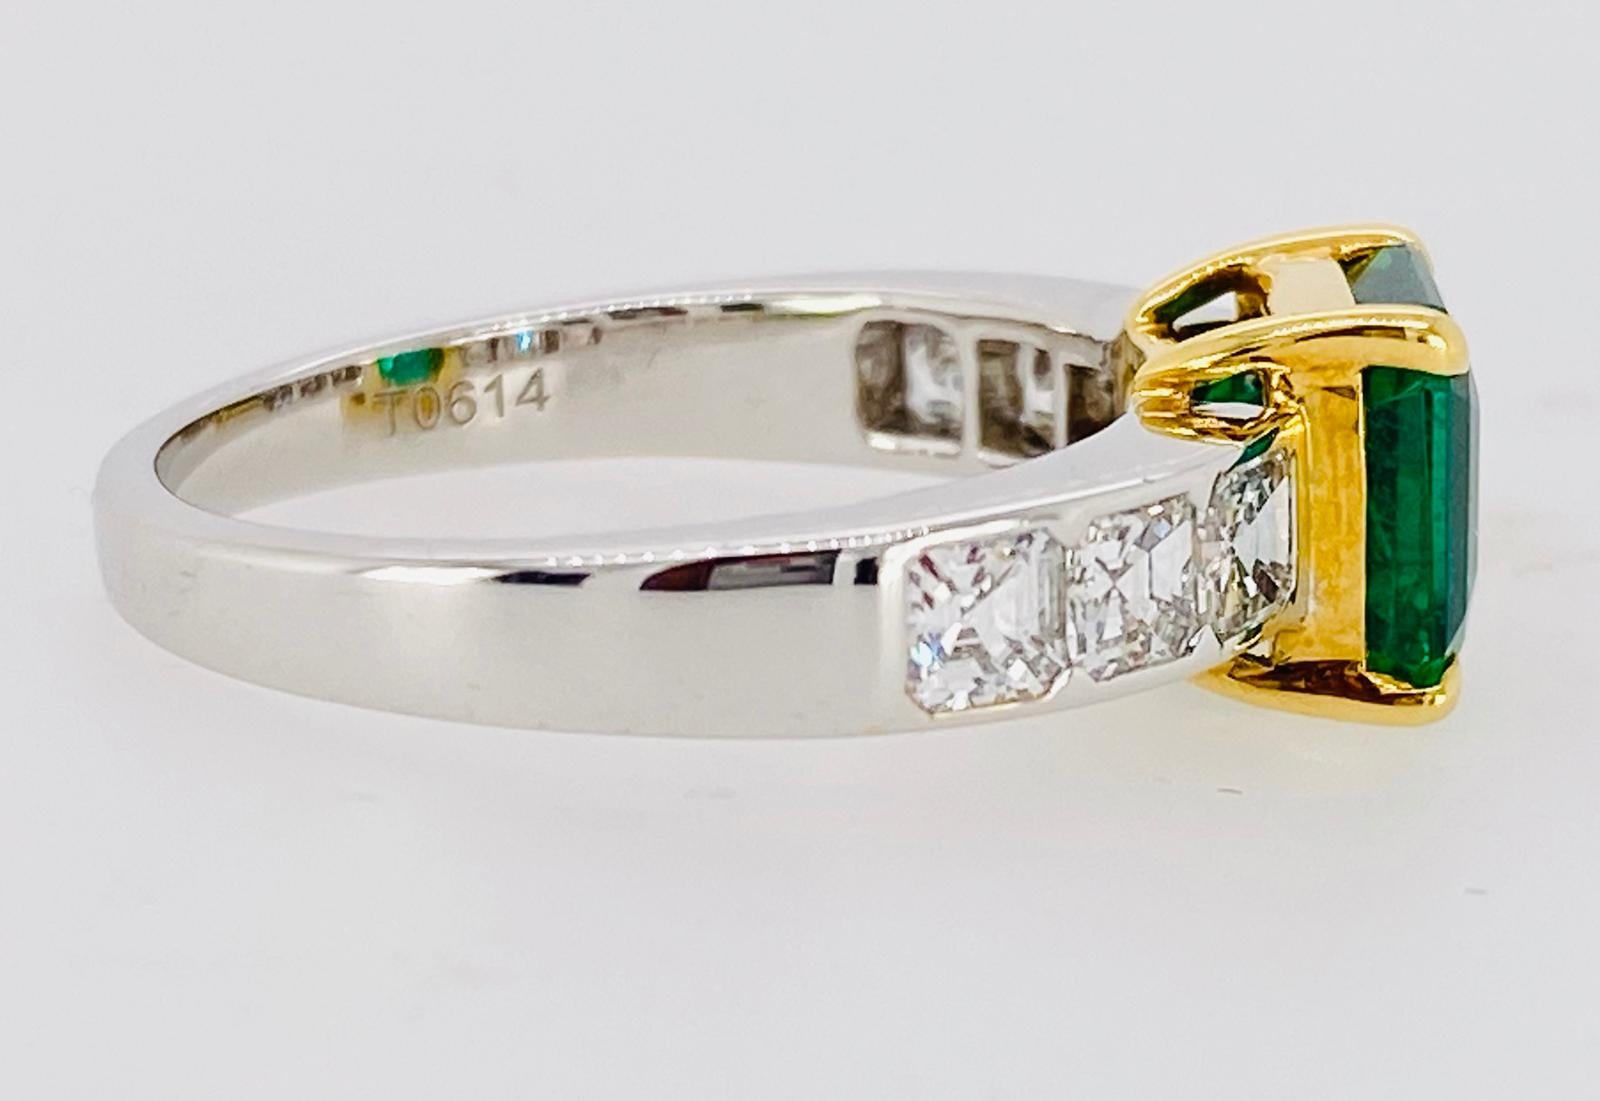 Une émeraude unique de taille Asscher, rehaussée de six diamants gradués de taille Asscher, est sertie dans une monture en or blanc et jaune 18 carats fabriquée à la main.
Certifié, couleur vive Emeraude.

Émeraude :  1,95 carats, environ 7 mm x 7